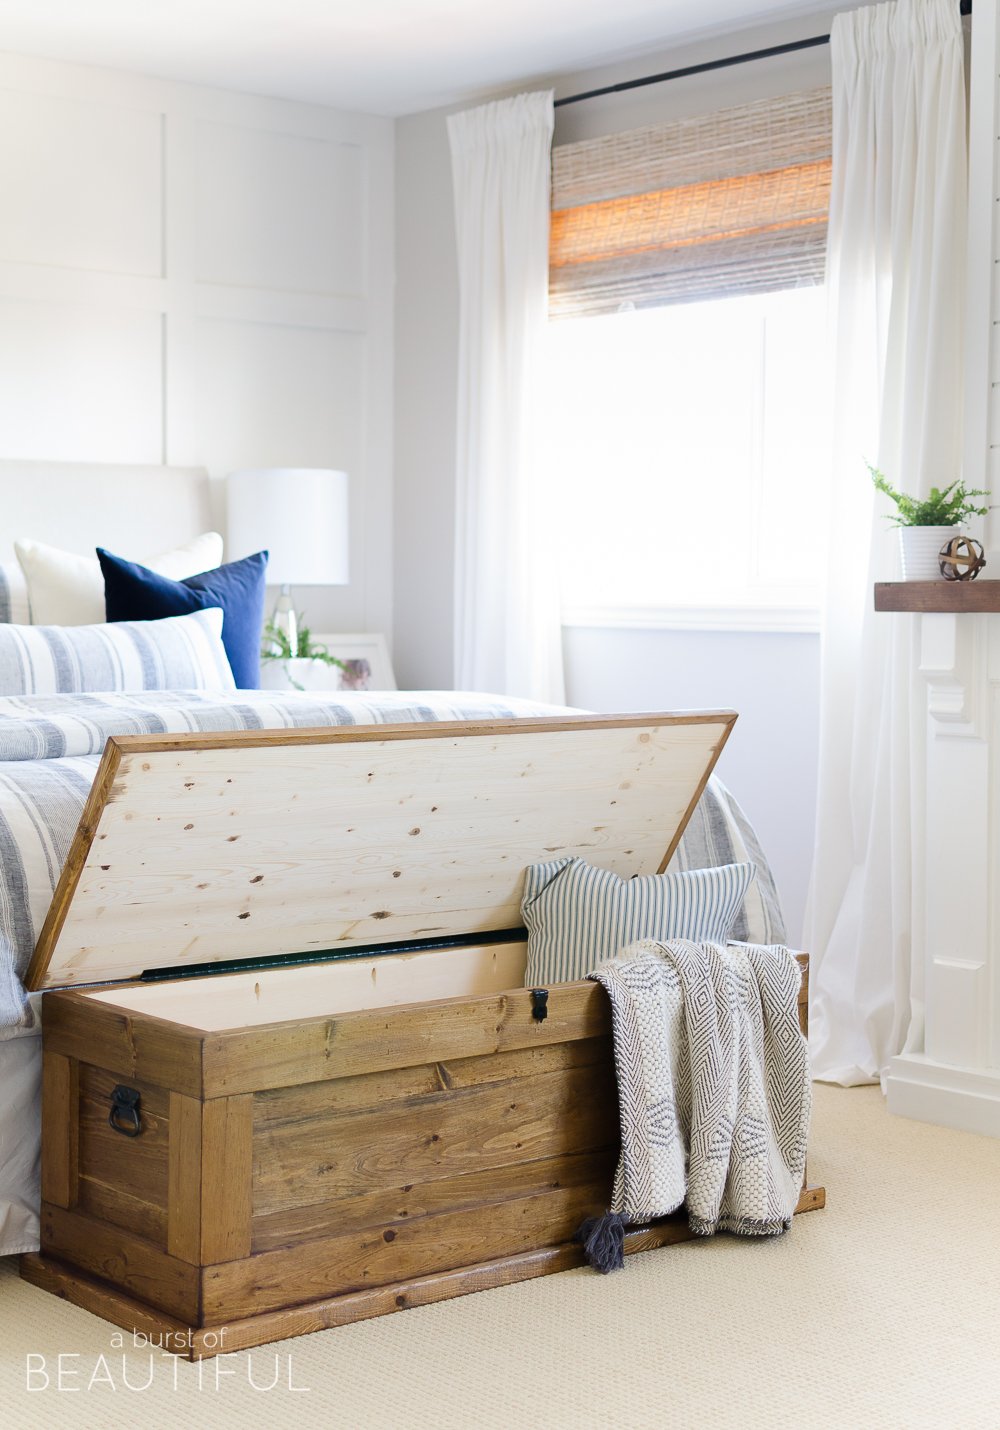 Компактное хранение постельного белья в шкафу: правила, хитрости и лайфхаки